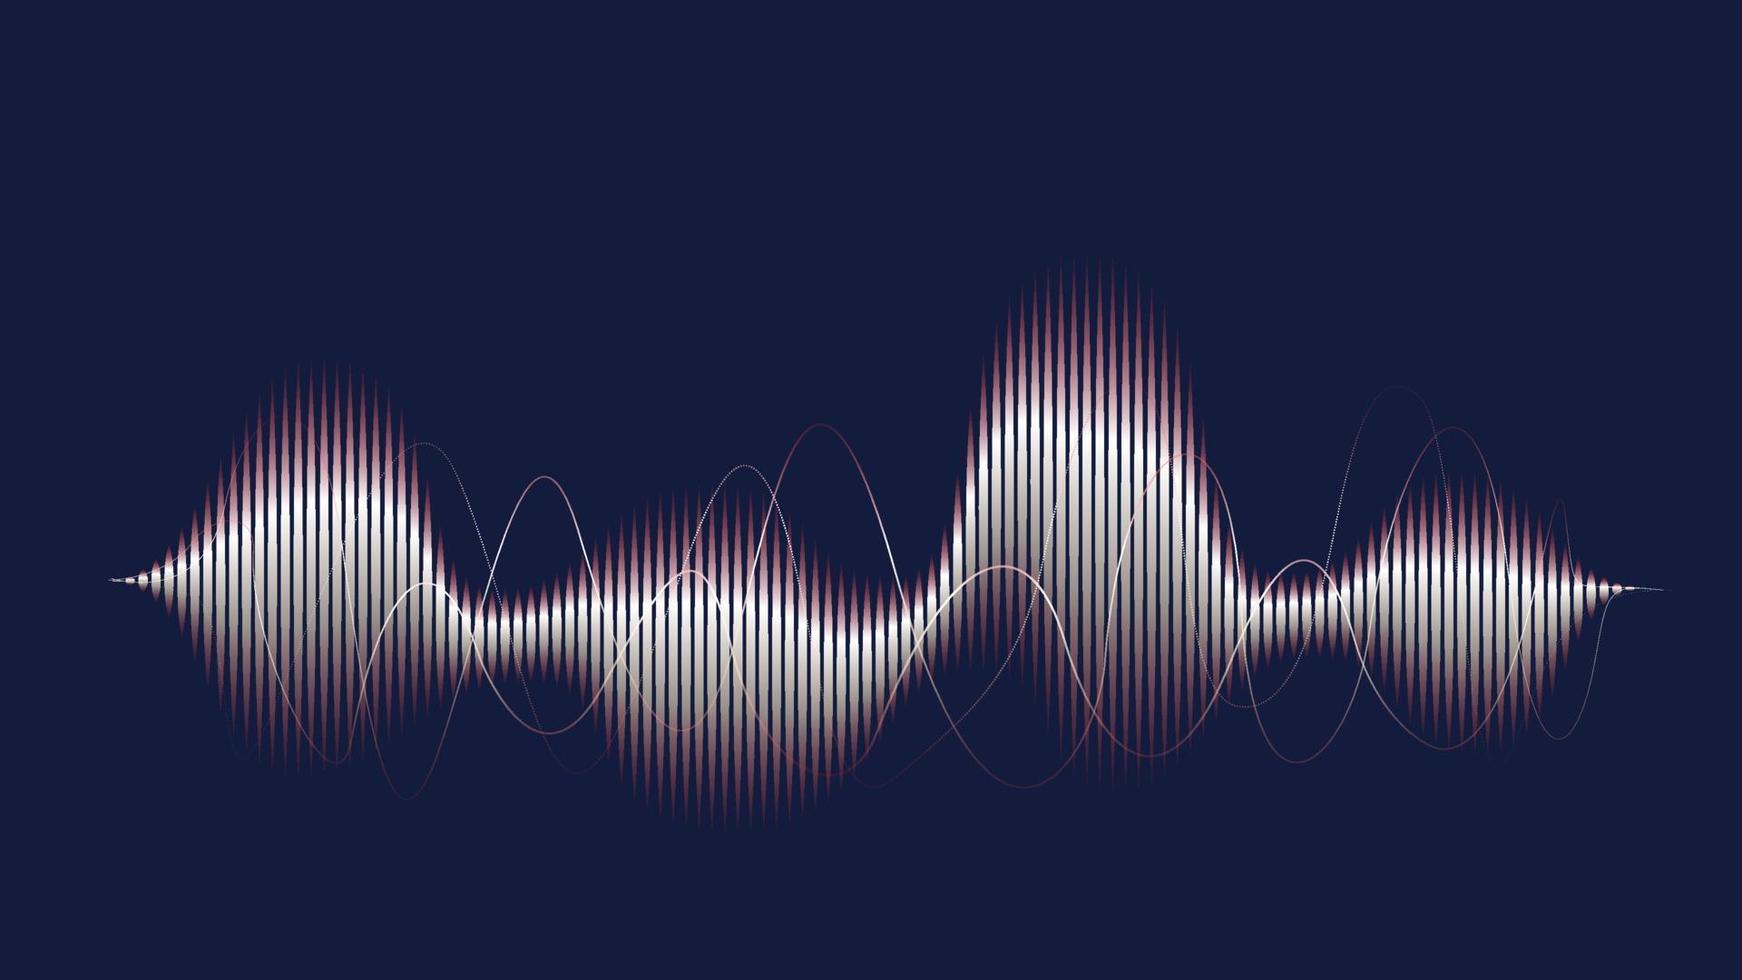 lignes d'ondes sonores abstraites modernes avec fond bleu foncé vecteur